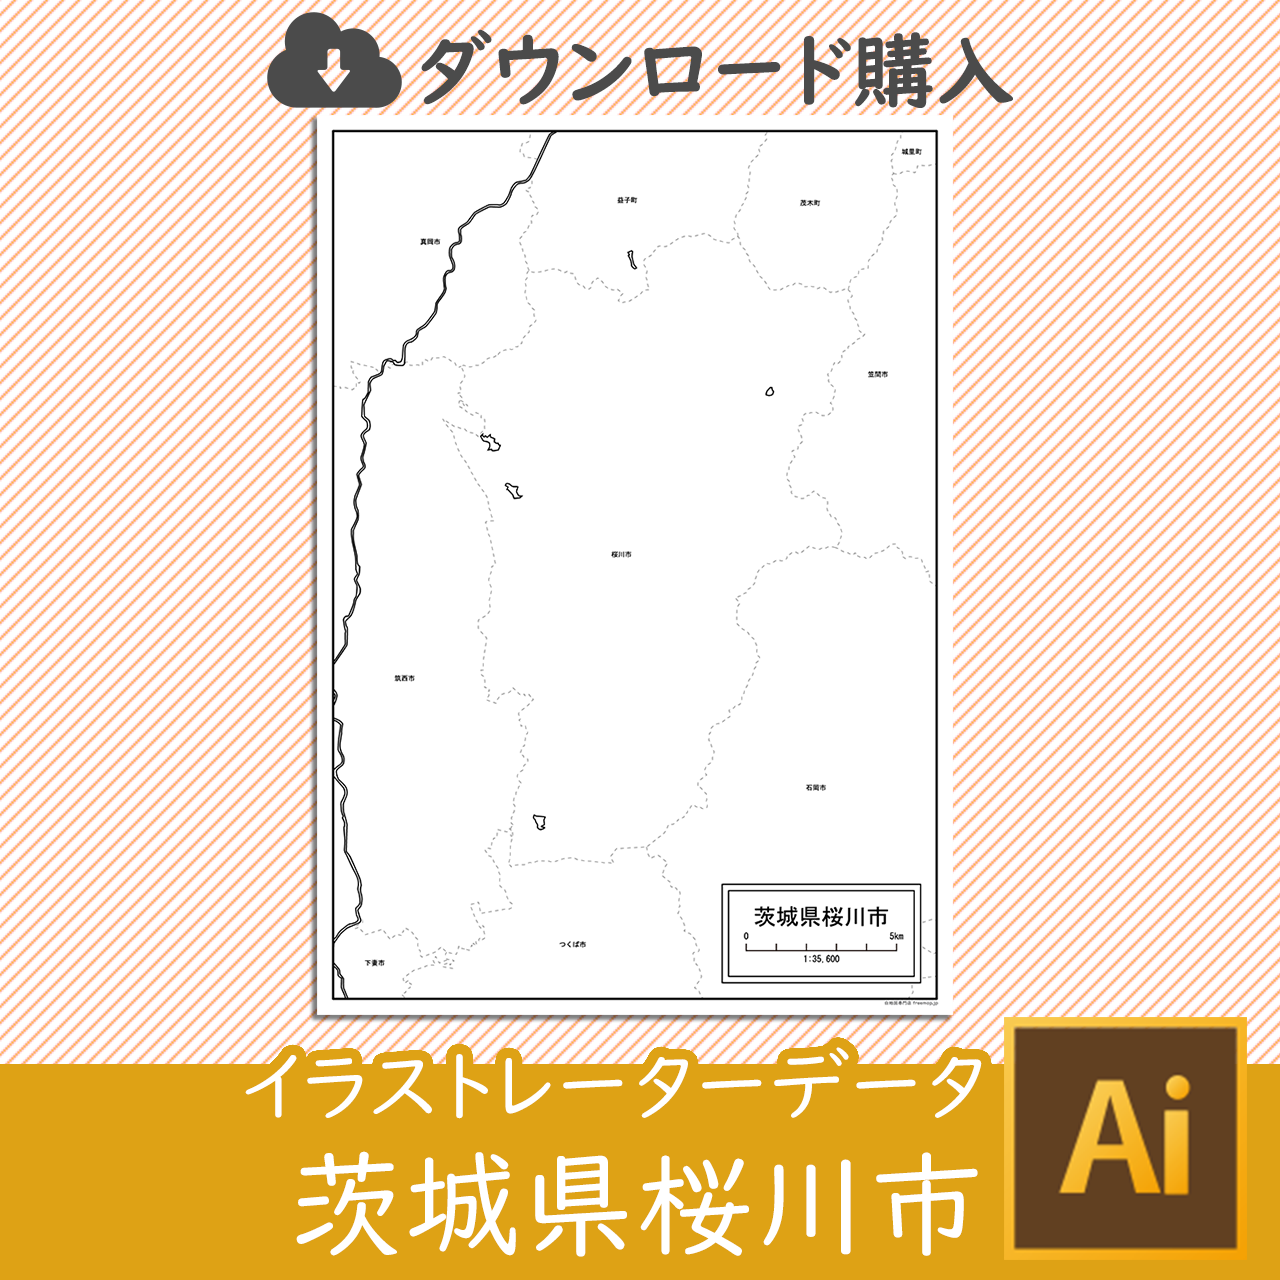 桜川市のaiデータのサムネイル画像